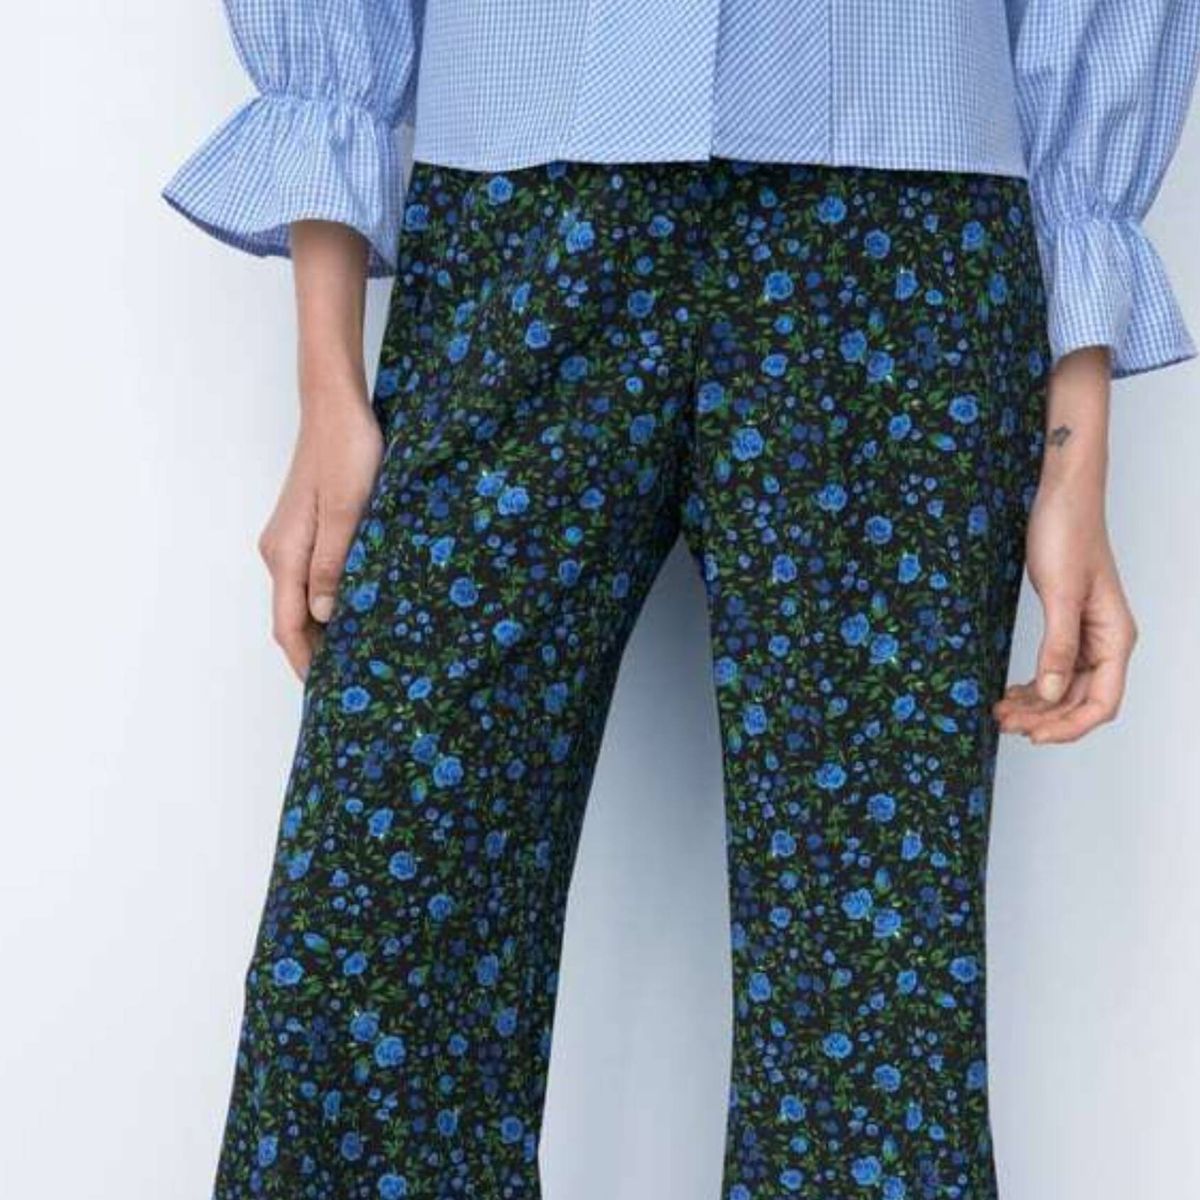 El pantalón de flores de Zara que adoran las expertas de moda